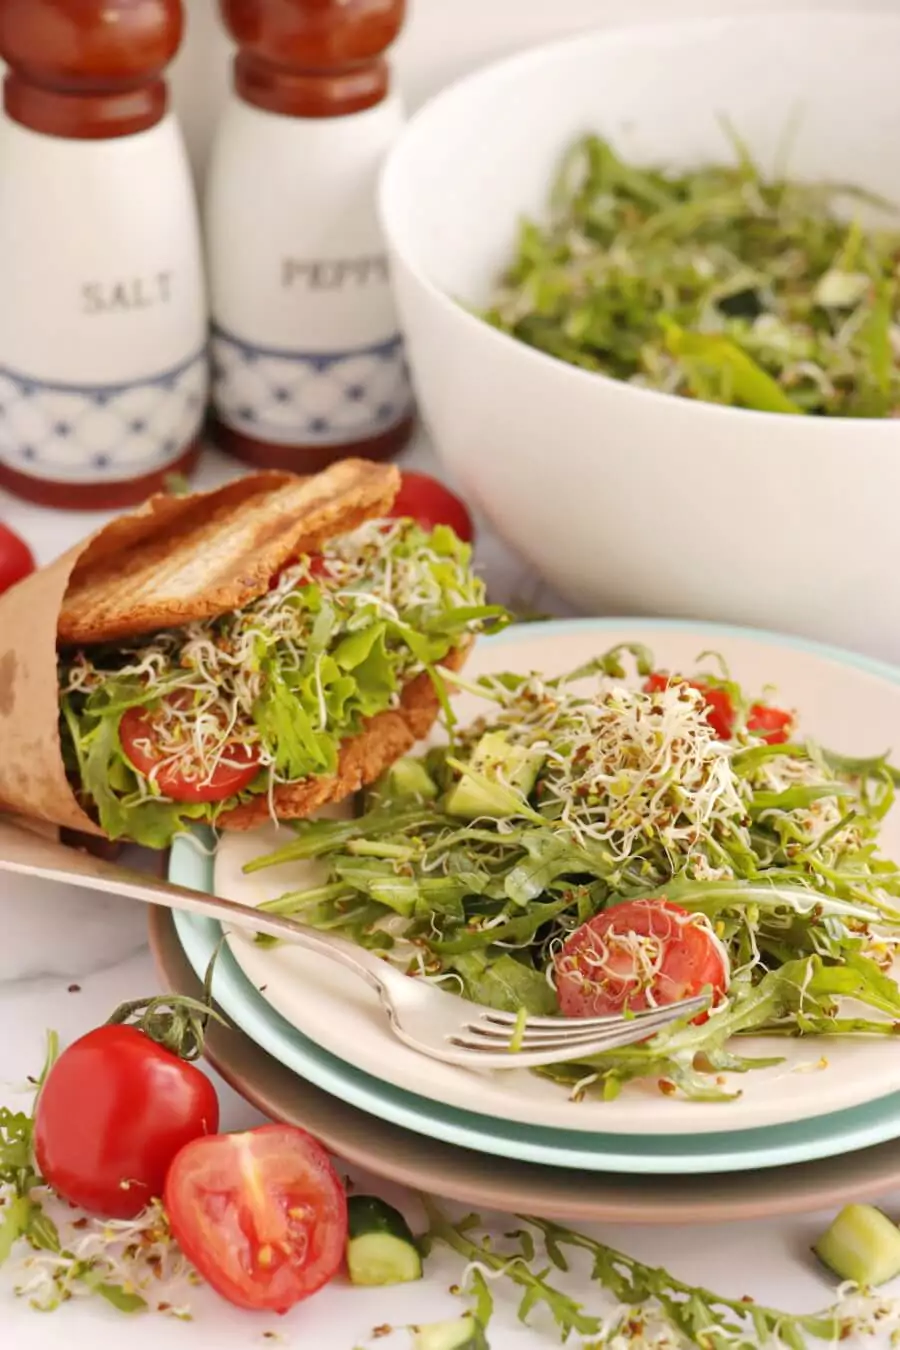 Healthy Vegan Quick Rocket Salad Recipe - Cook.me Recipes